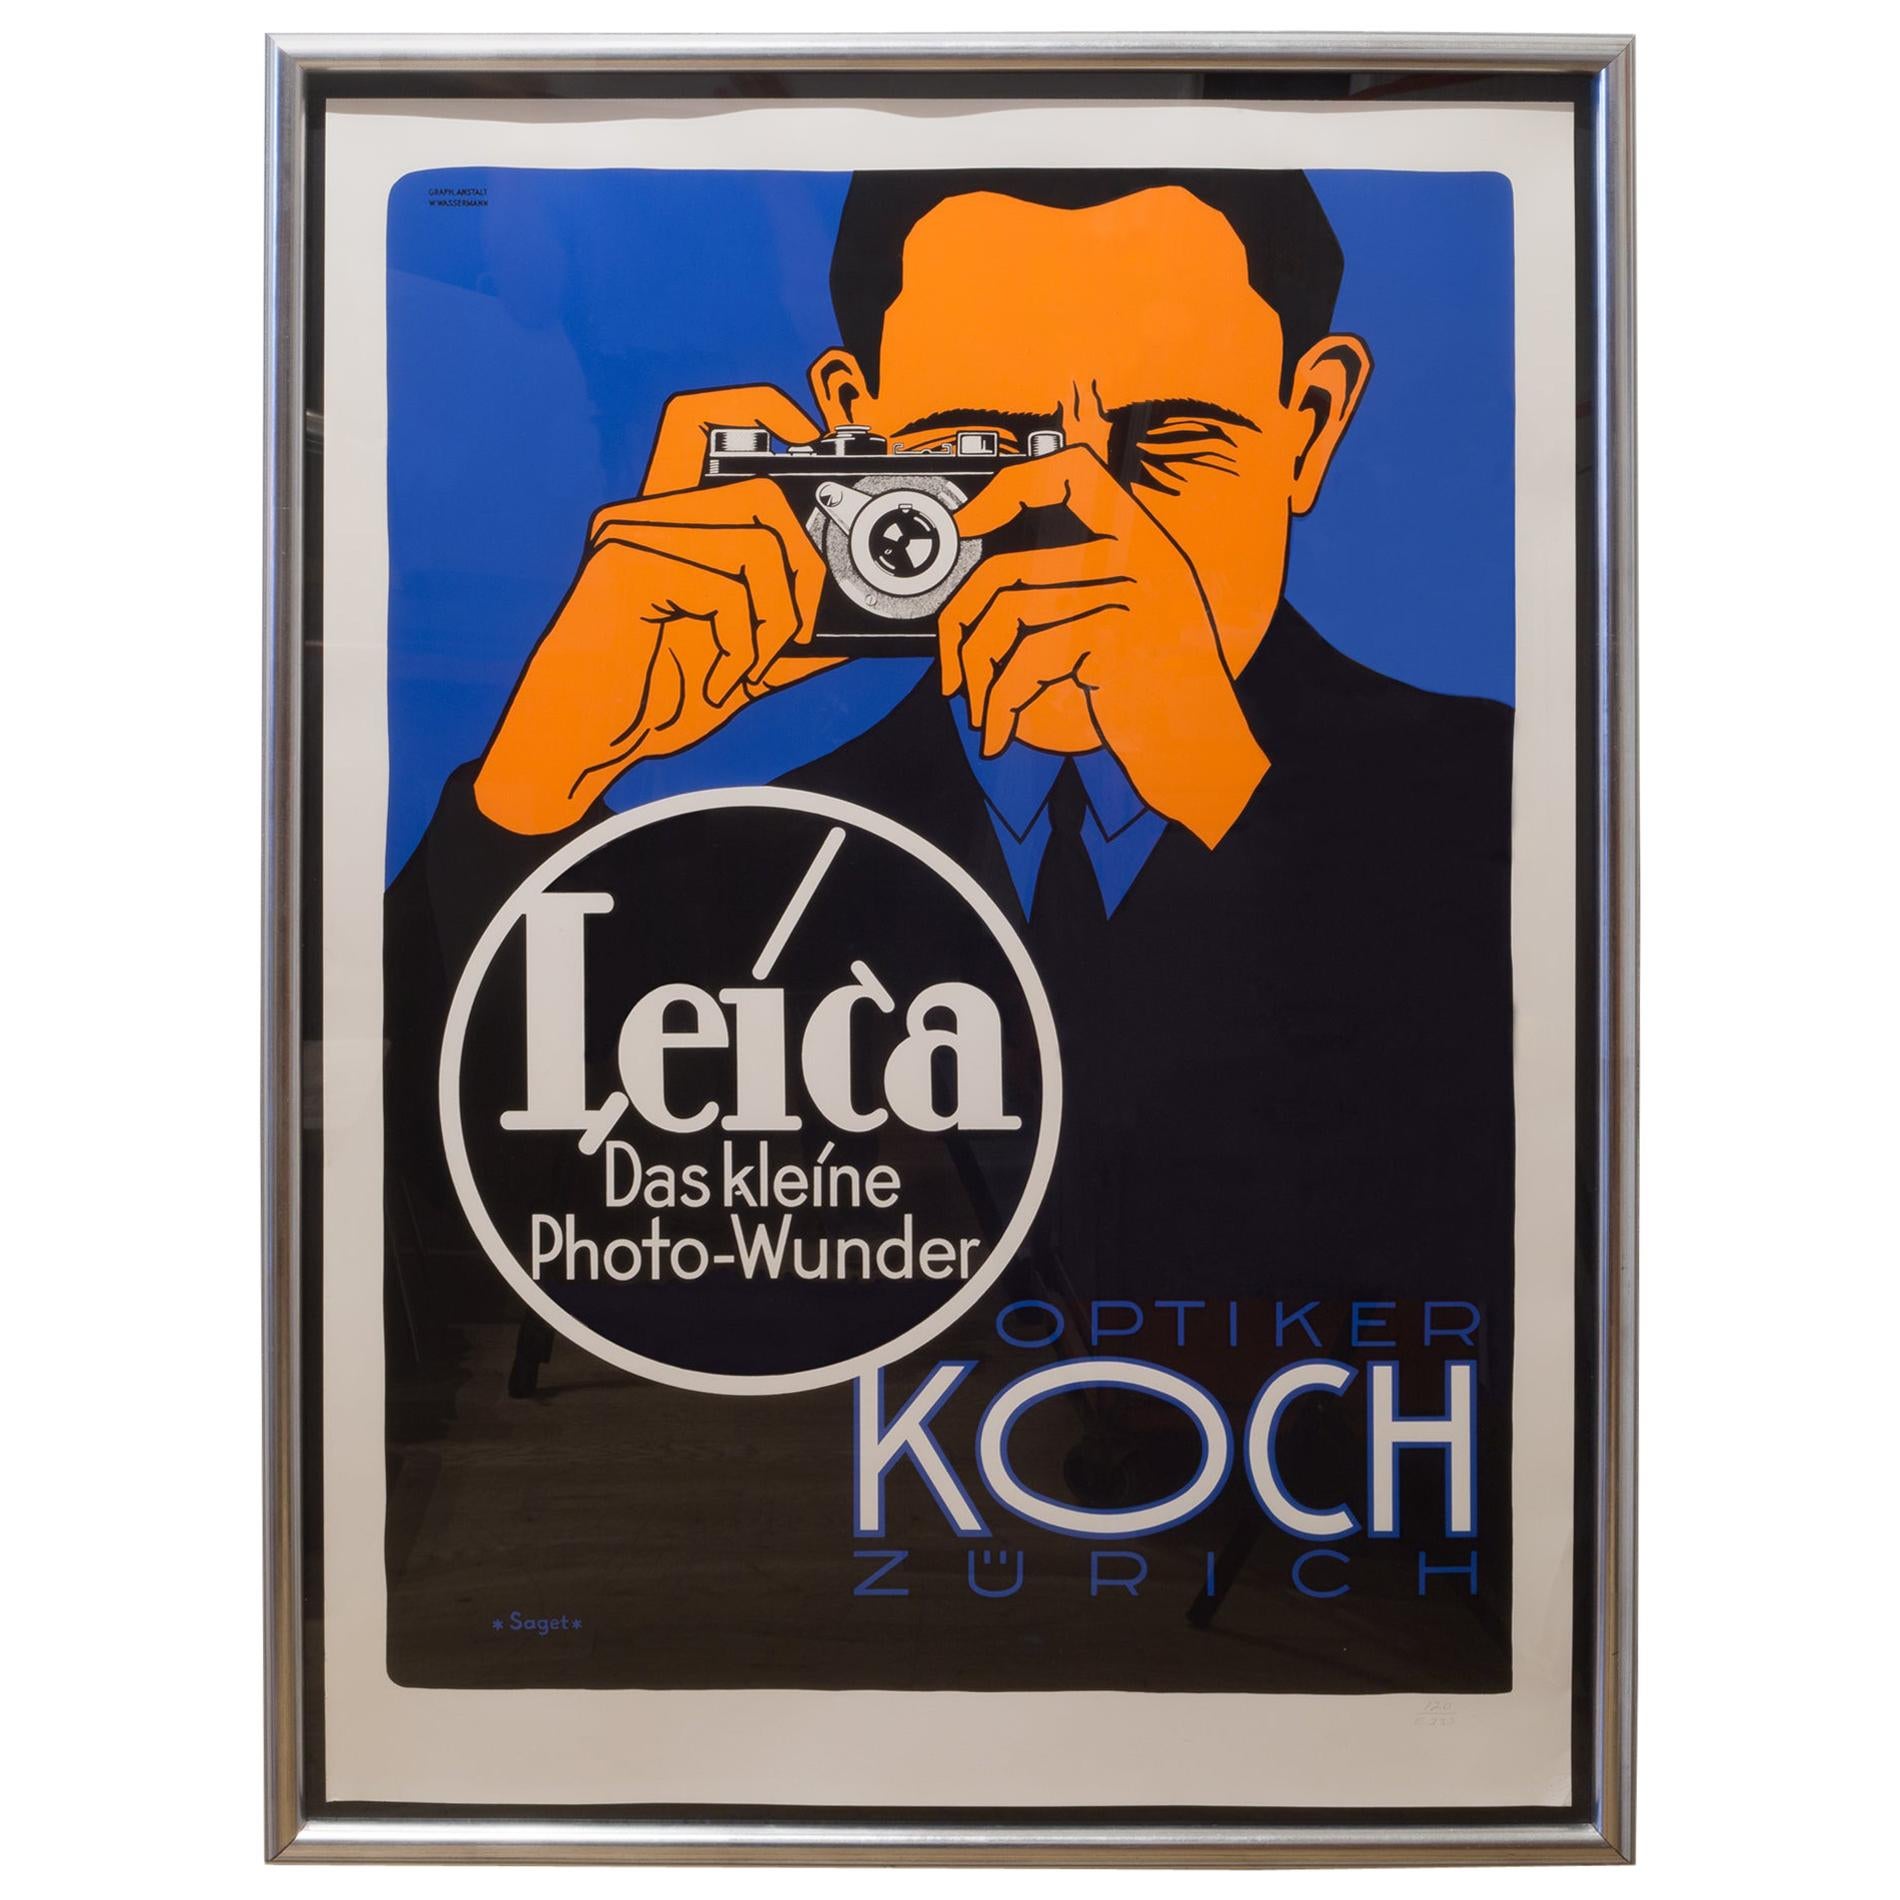 "Leica Das kleine Photo-Wunder Koch, by Hubert Sagat" Limited Edition